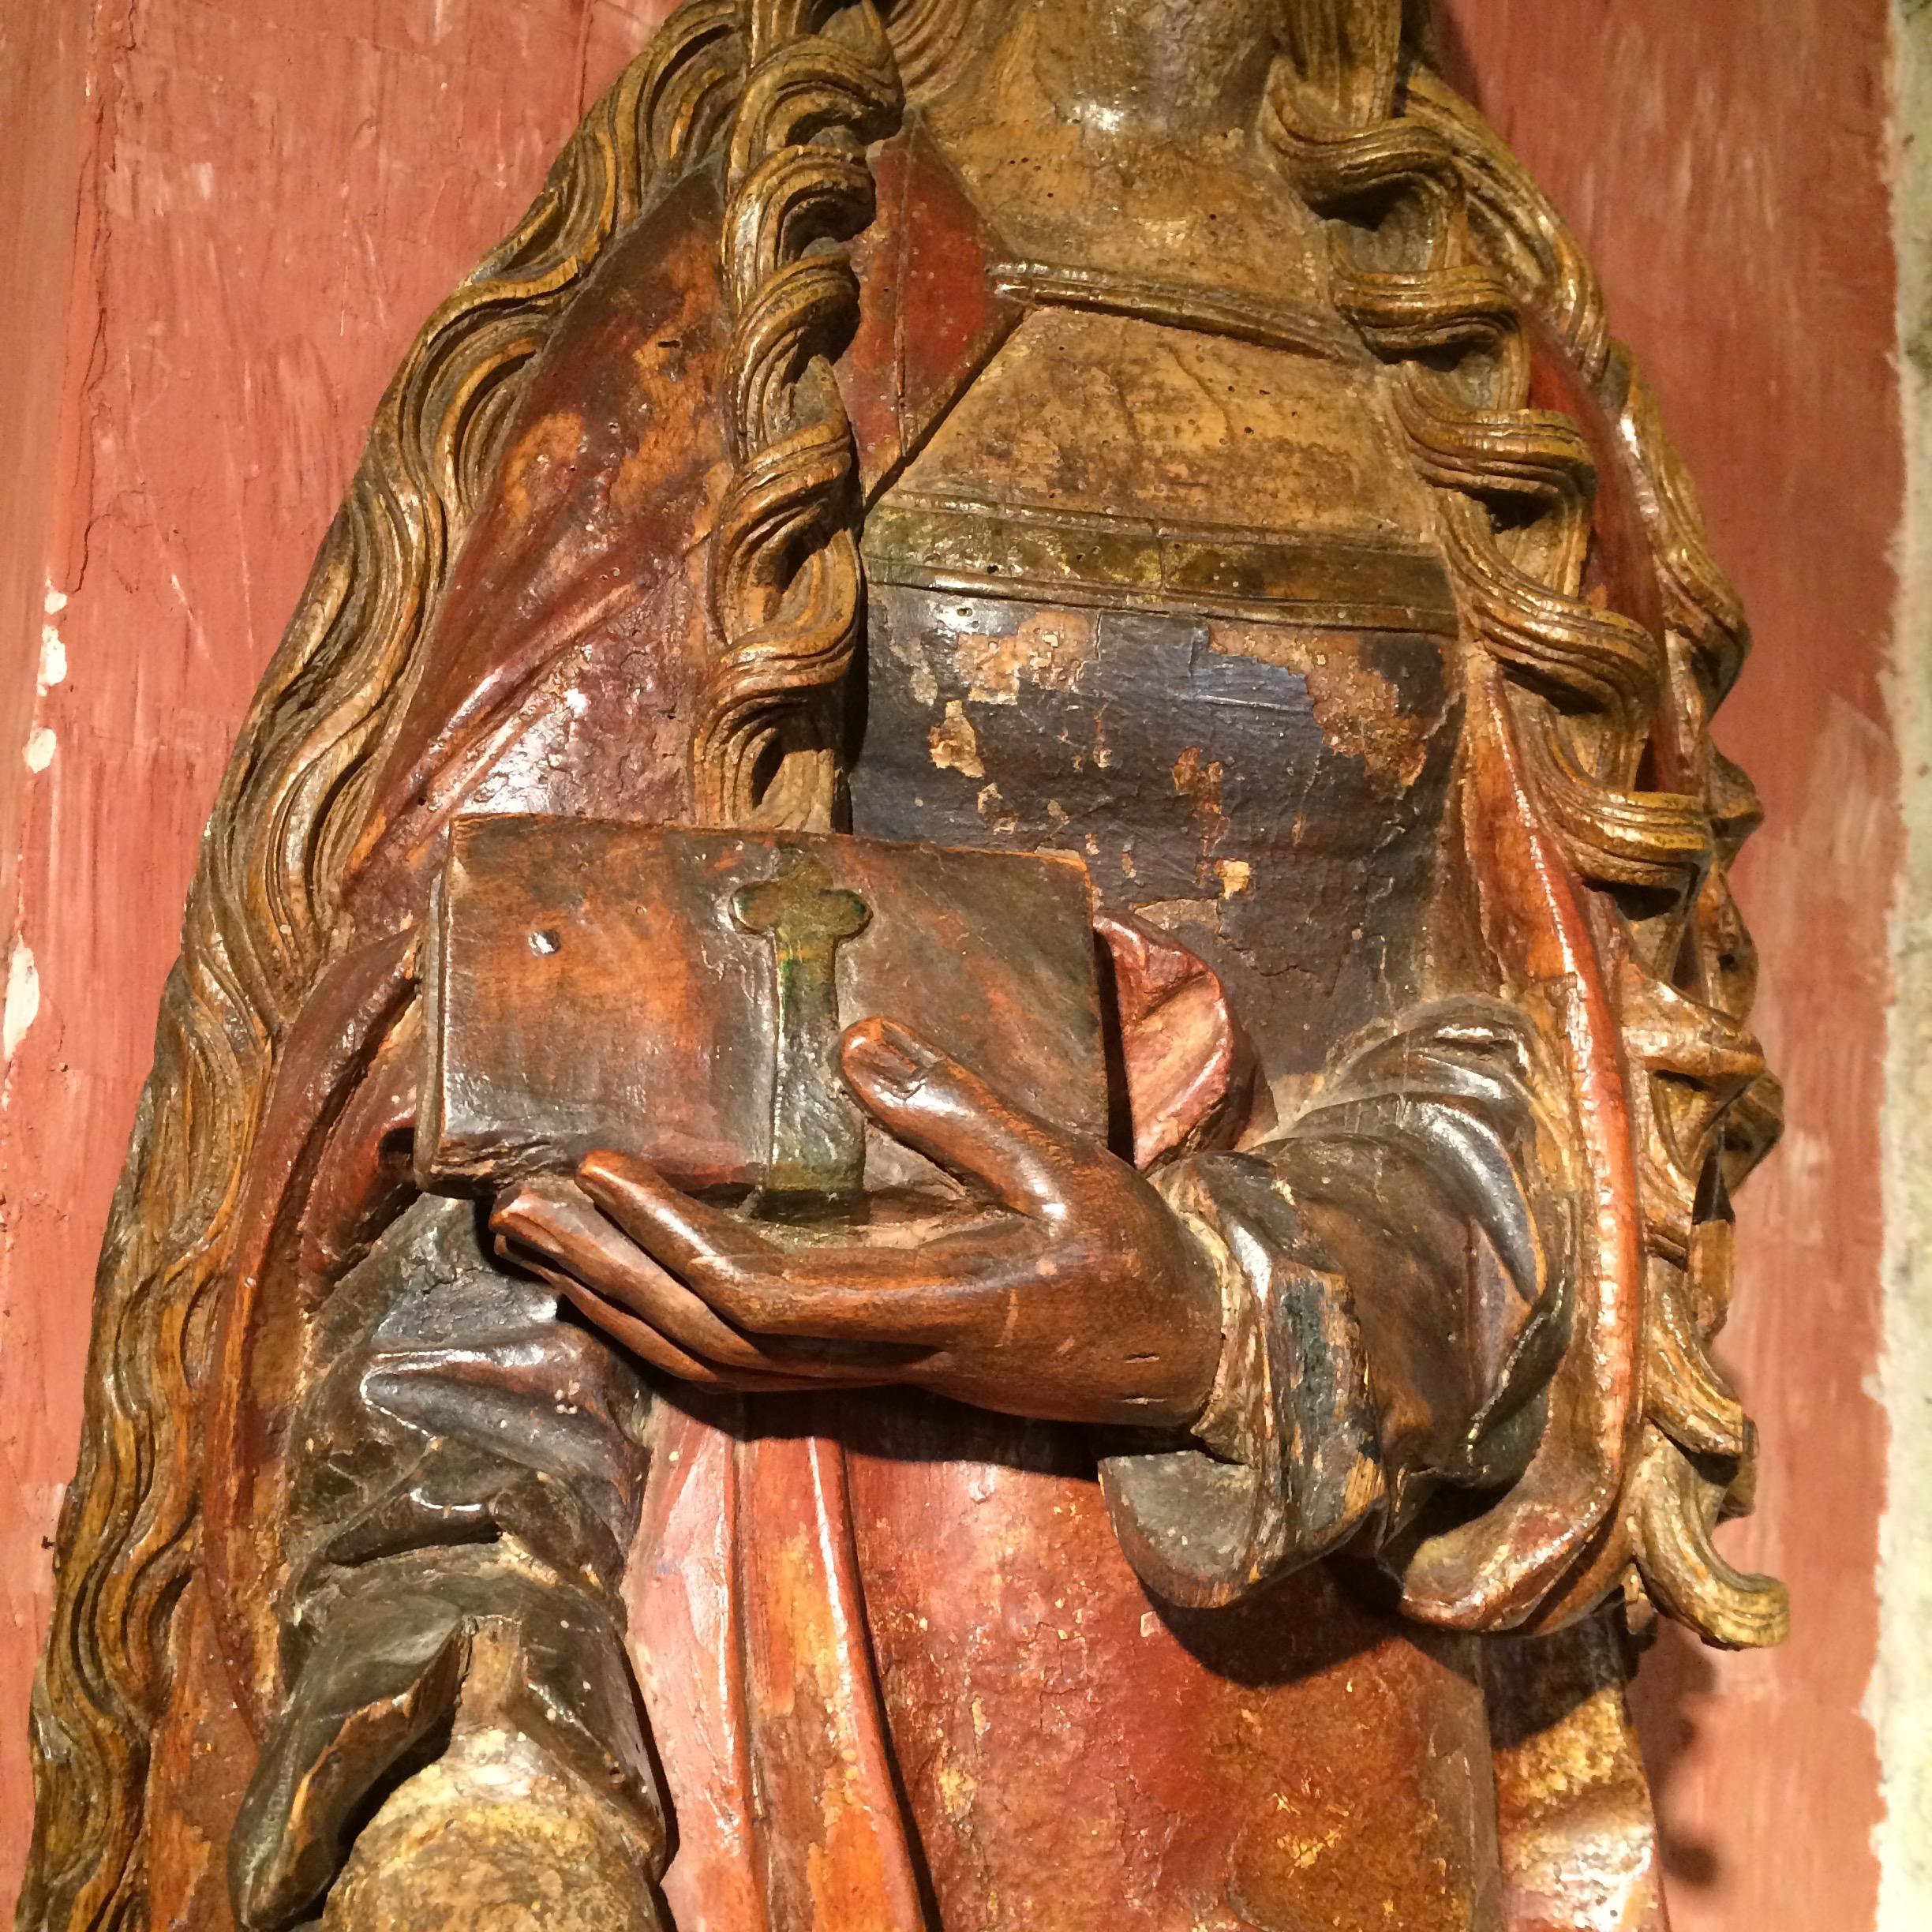 SAINTE CATHERINE D'ALEXANDRIE

ORIGINE : SWABIA, RÉGION DE L'ULM
PÉRIODE : vers 1510-1520

Hauteur : 118 cm
Longueur : 39 cm
Profondeur : 17 cm

Tilleul

Importante figurine en bois creusée à l'arrière à l'aide d'une gouge. Polychromie originale